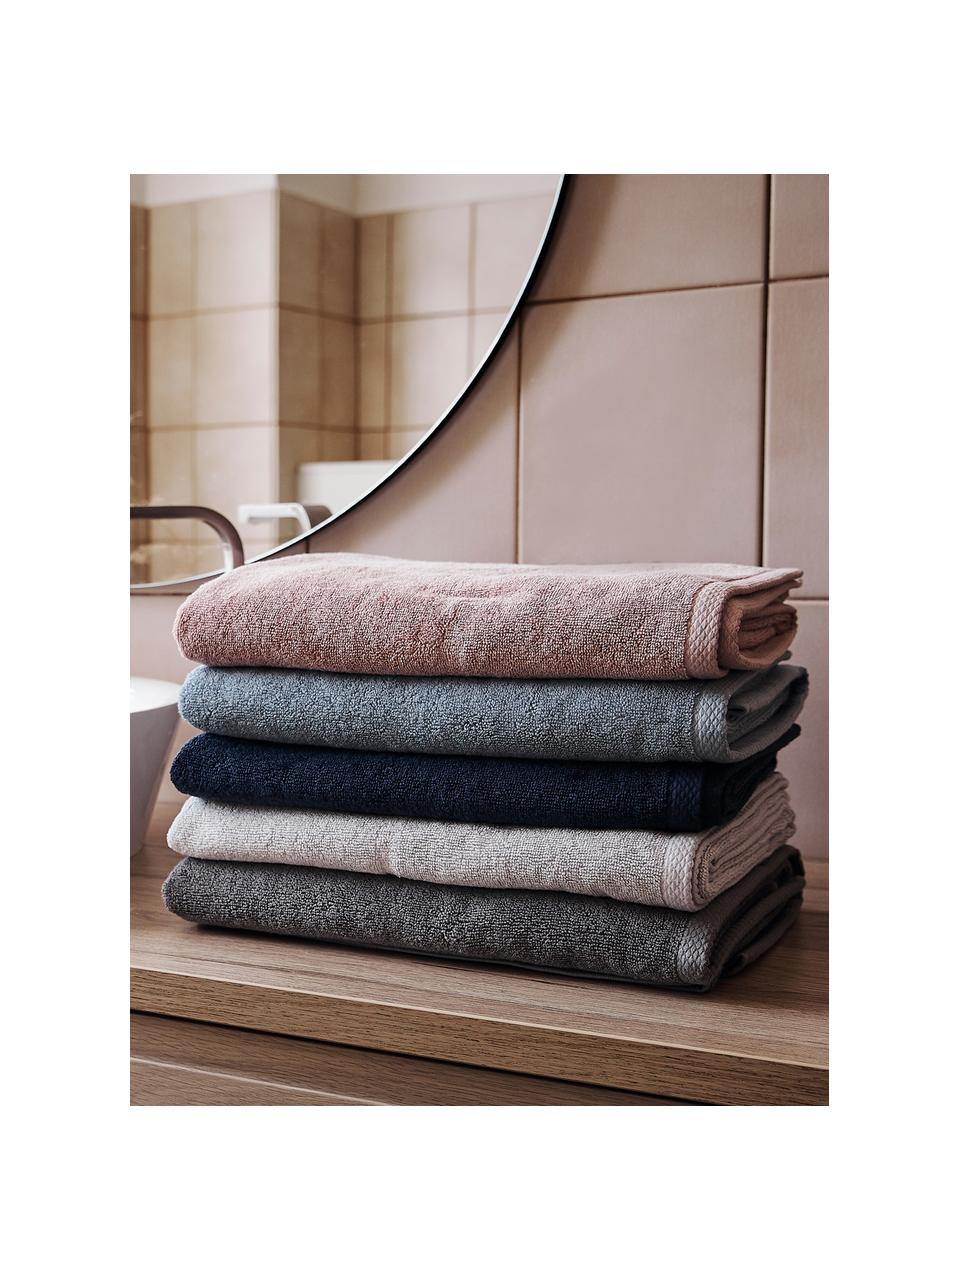 Einfarbiges Handtuch-Set Comfort, 3-tlg., Hellgrau, Set mit verschiedenen Größen